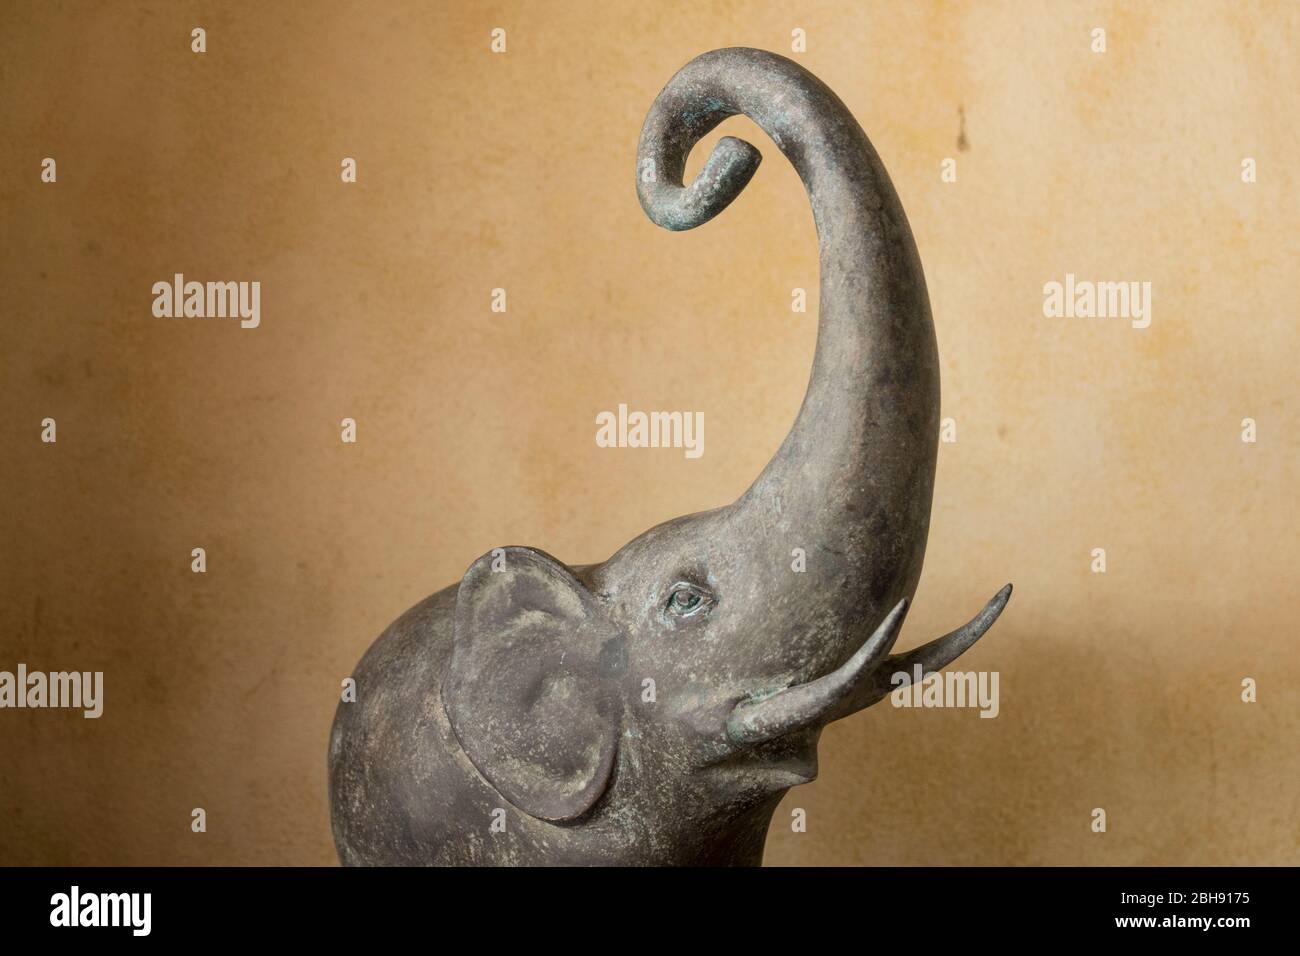 Stone elephant as decoration Stock Photo